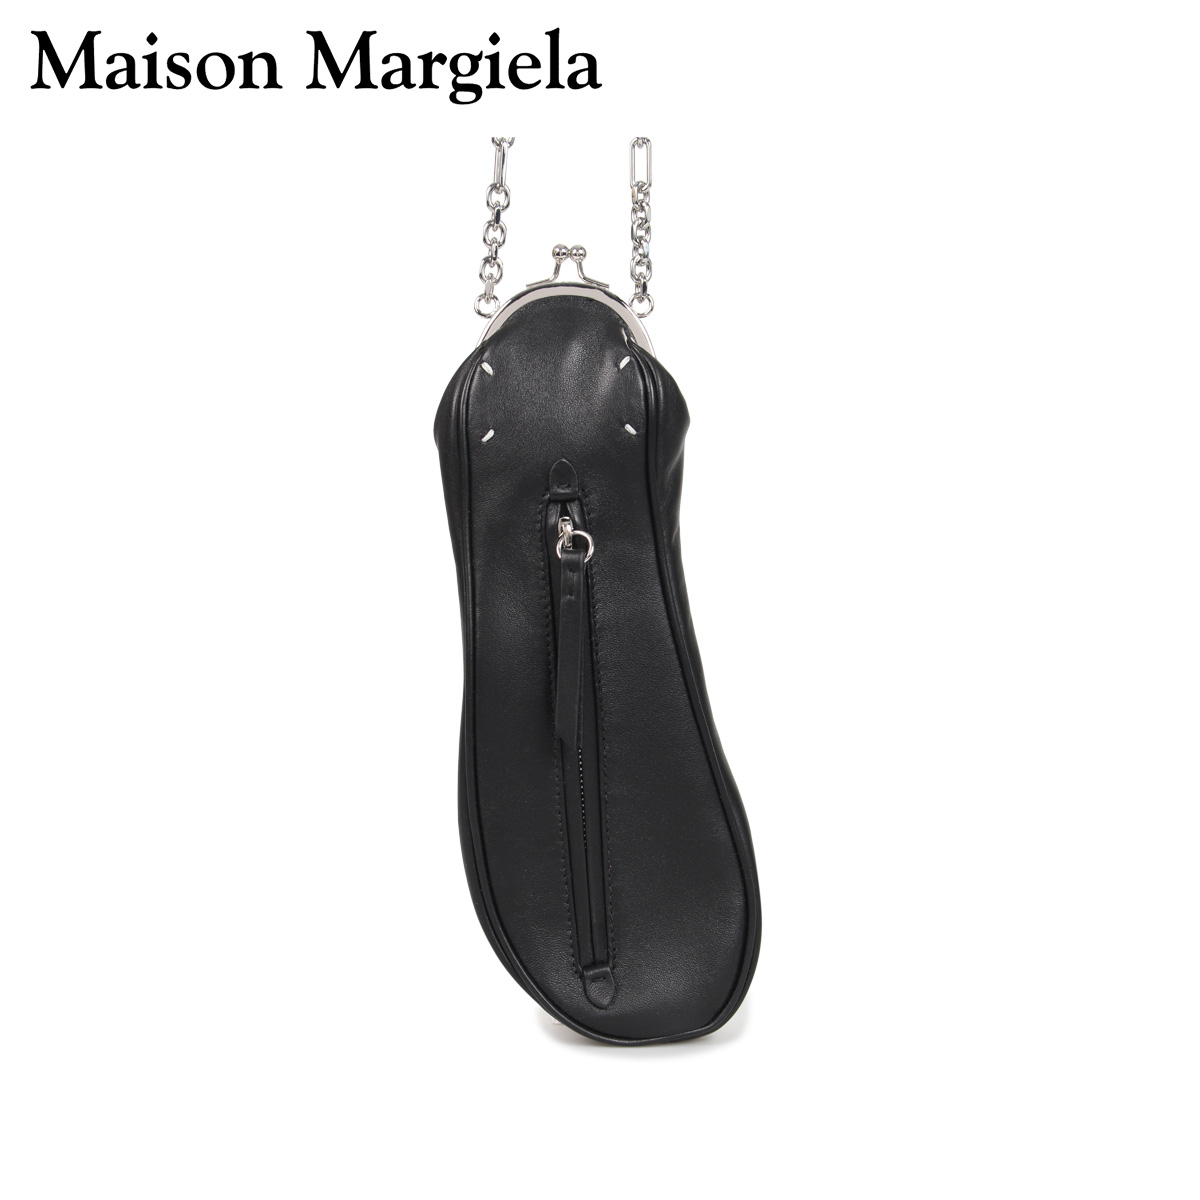 MAISON MARGIELA メゾンマルジェラ バッグ ショルダーバッグ レディース TABI CROSS BODY BAG ブラック 黒 S56WG0110 P2655